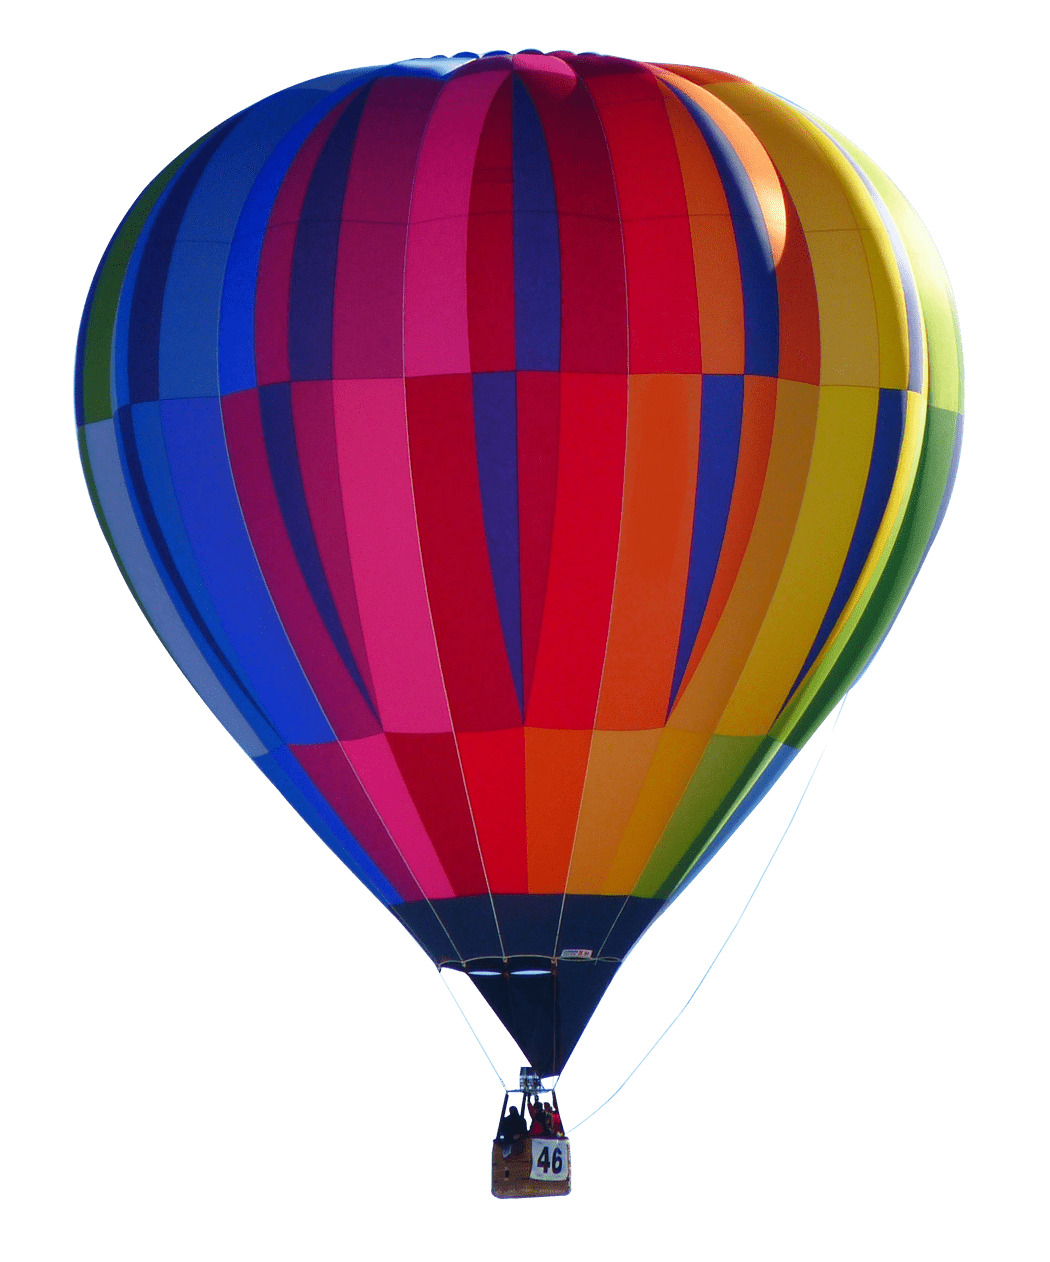 Colourful Hot Air Balloon icons